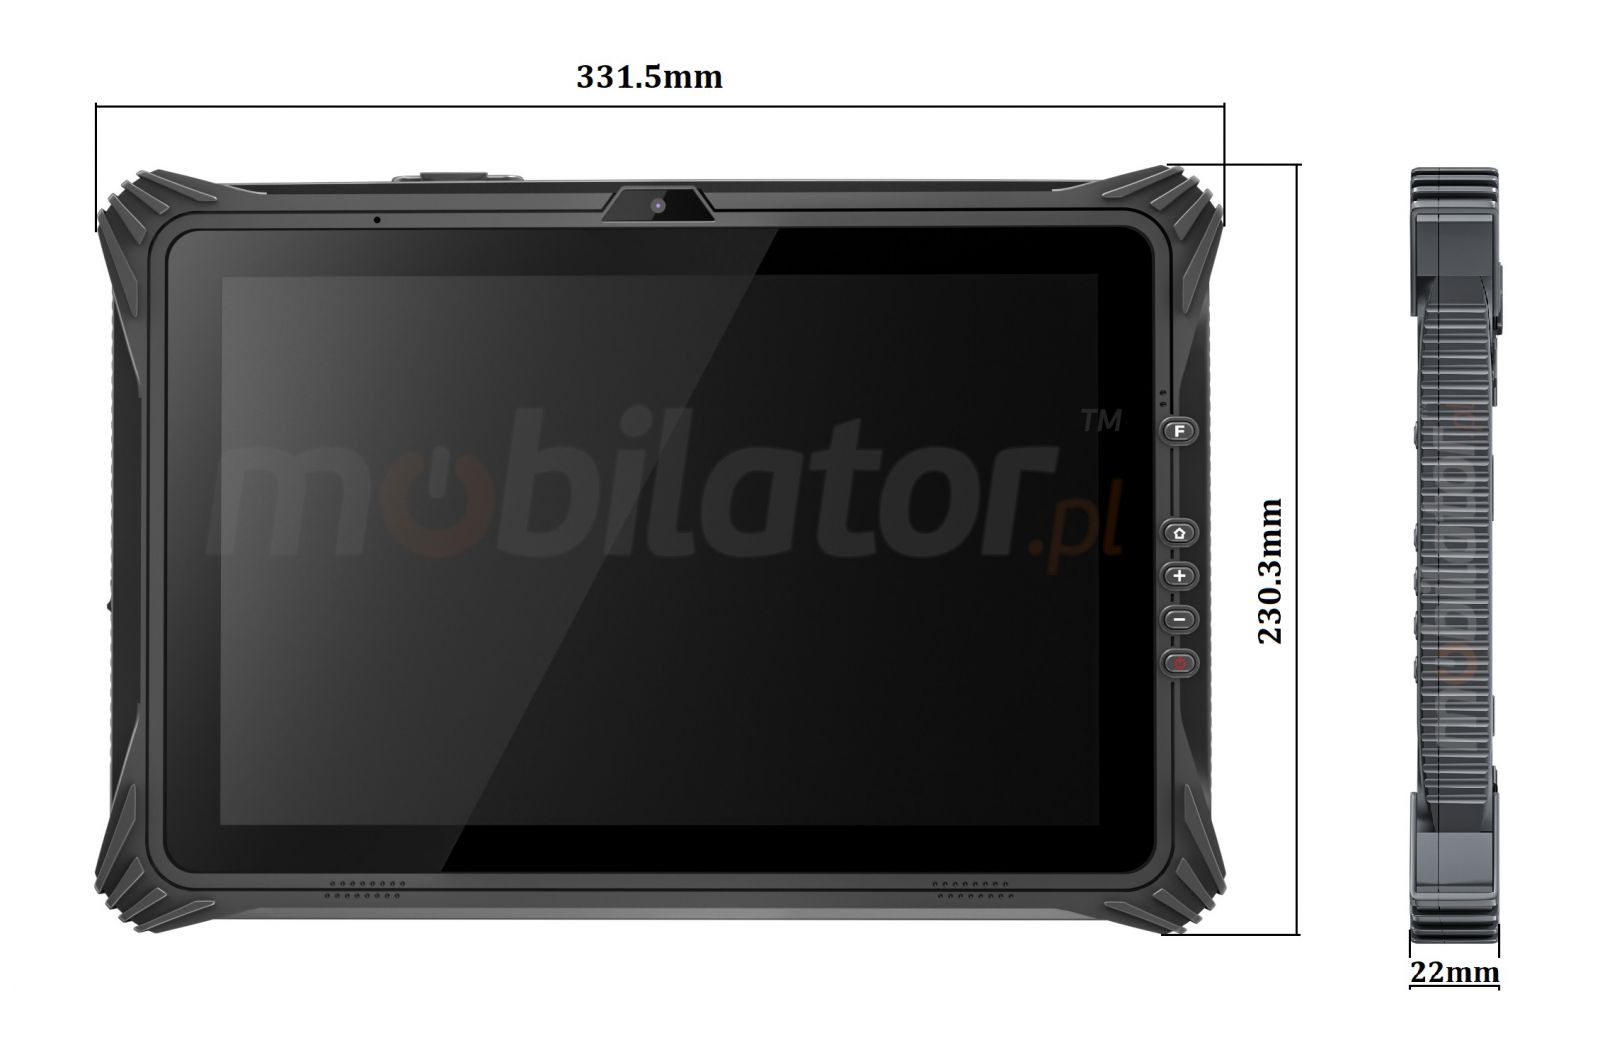 Emdoor I20U v.5 - Wytrzymay tablet z czytnikiem kodw 1D MOTO, 8GB RAM pamici, dyskiem 128GB, NFC, 4G, BT 4.2 i Windows 10 PRO